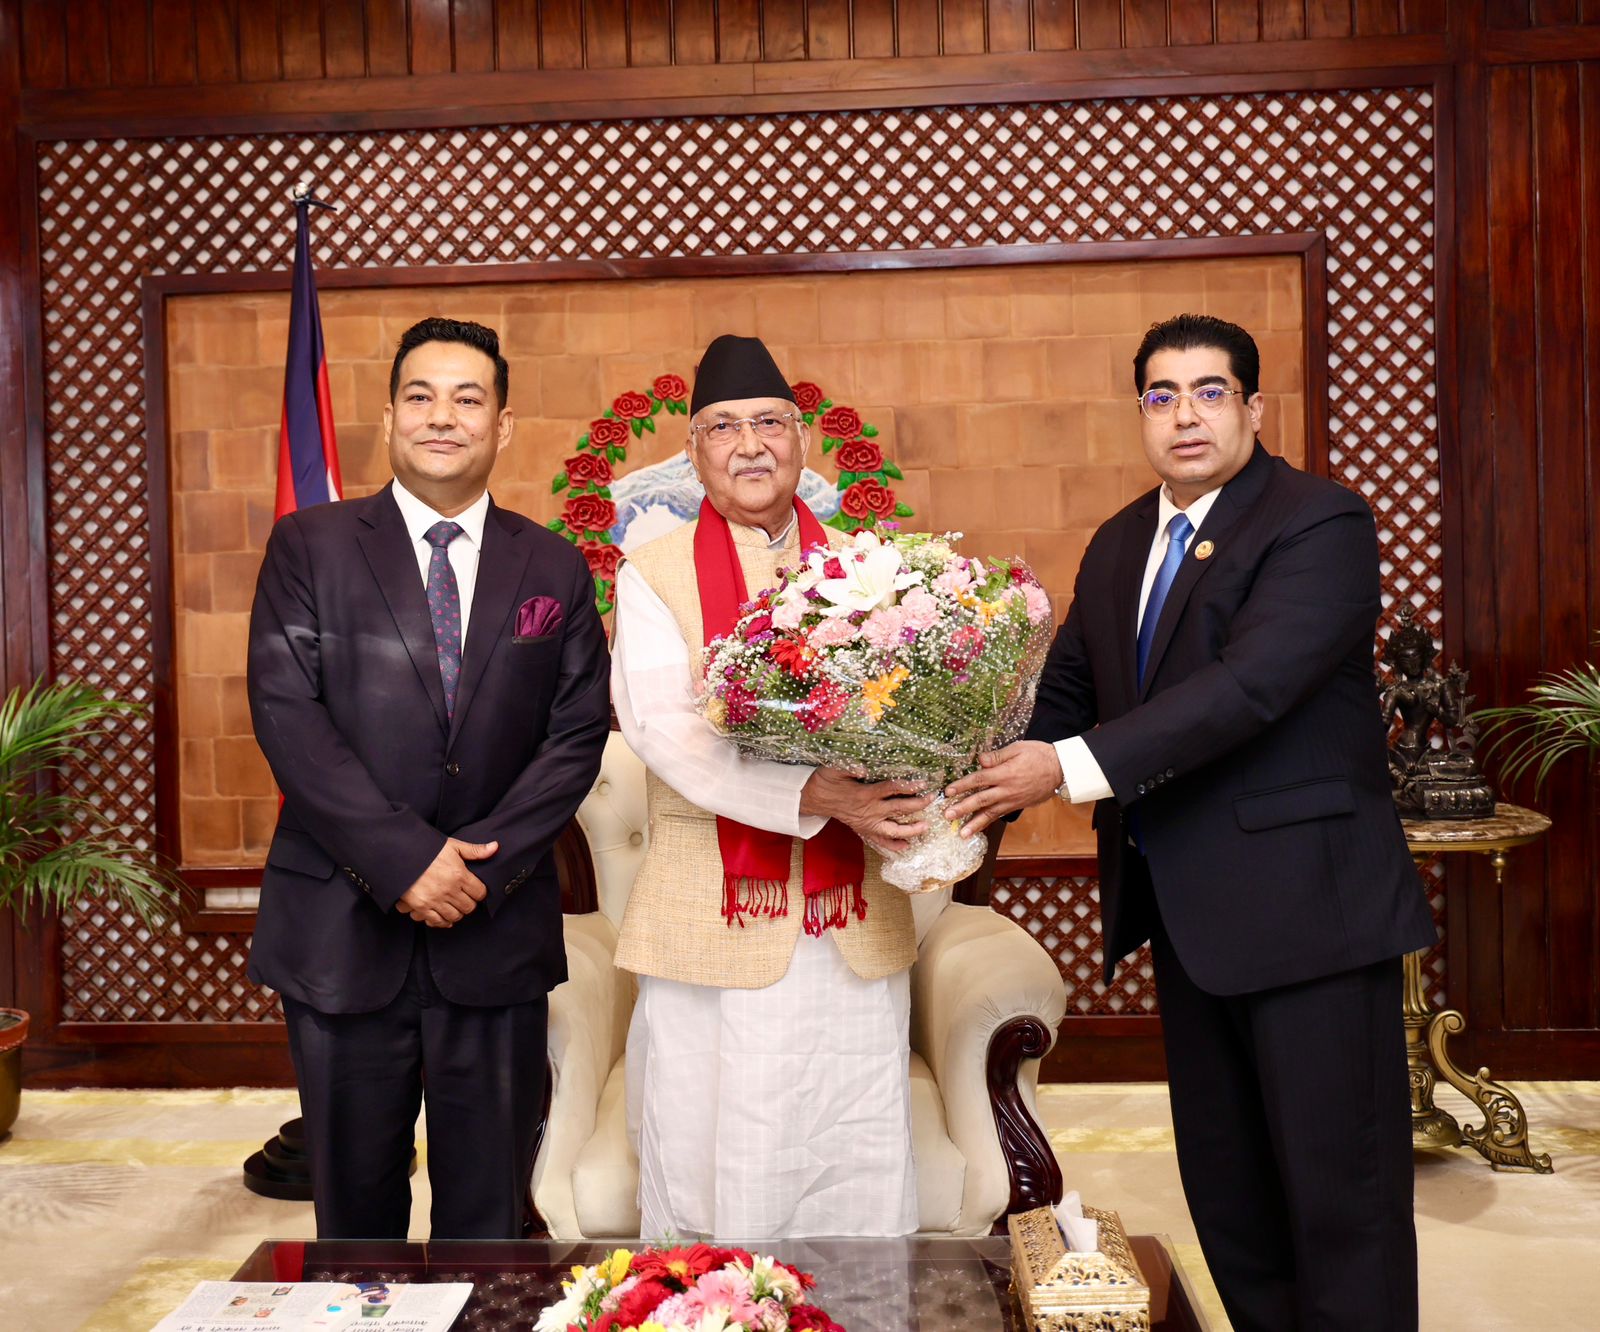 नेपाल परिवार दलद्वारा प्रधानमन्त्री केपी शर्मा ओलीलाइ बधाई ज्ञापन